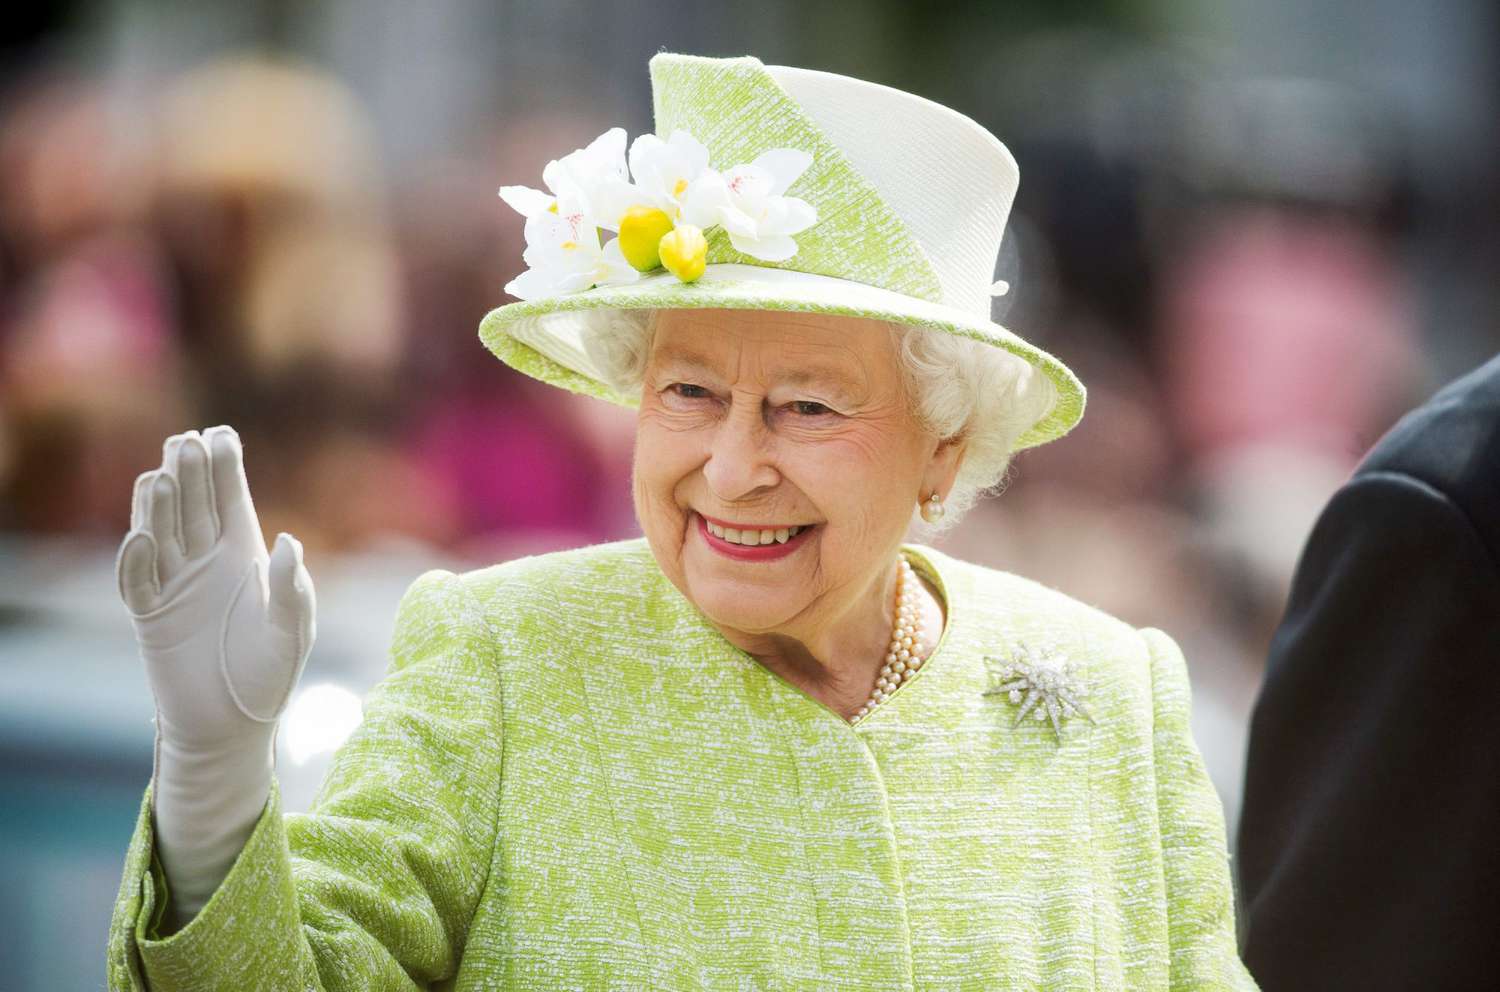 El mundo llora la muerte de la Reina Isabel II. Mira las reacciones a su partida.